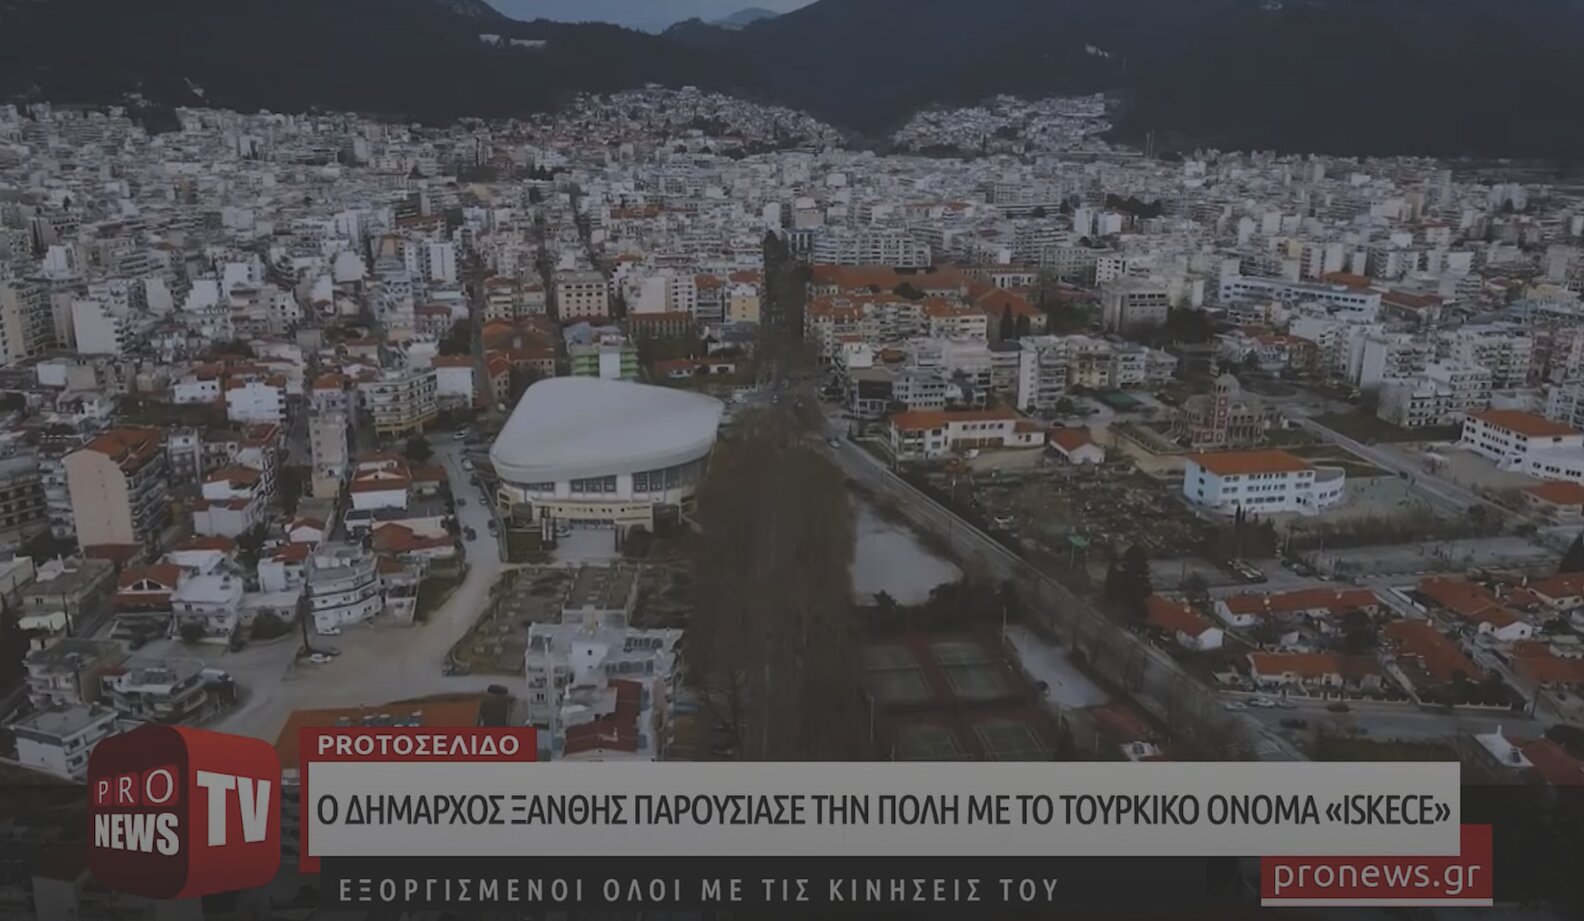 Αδιανόητο: Ο δήμαρχος Ξάνθης παρουσίασε την πόλη με το τουρκικό όνομα «İskeçe»!